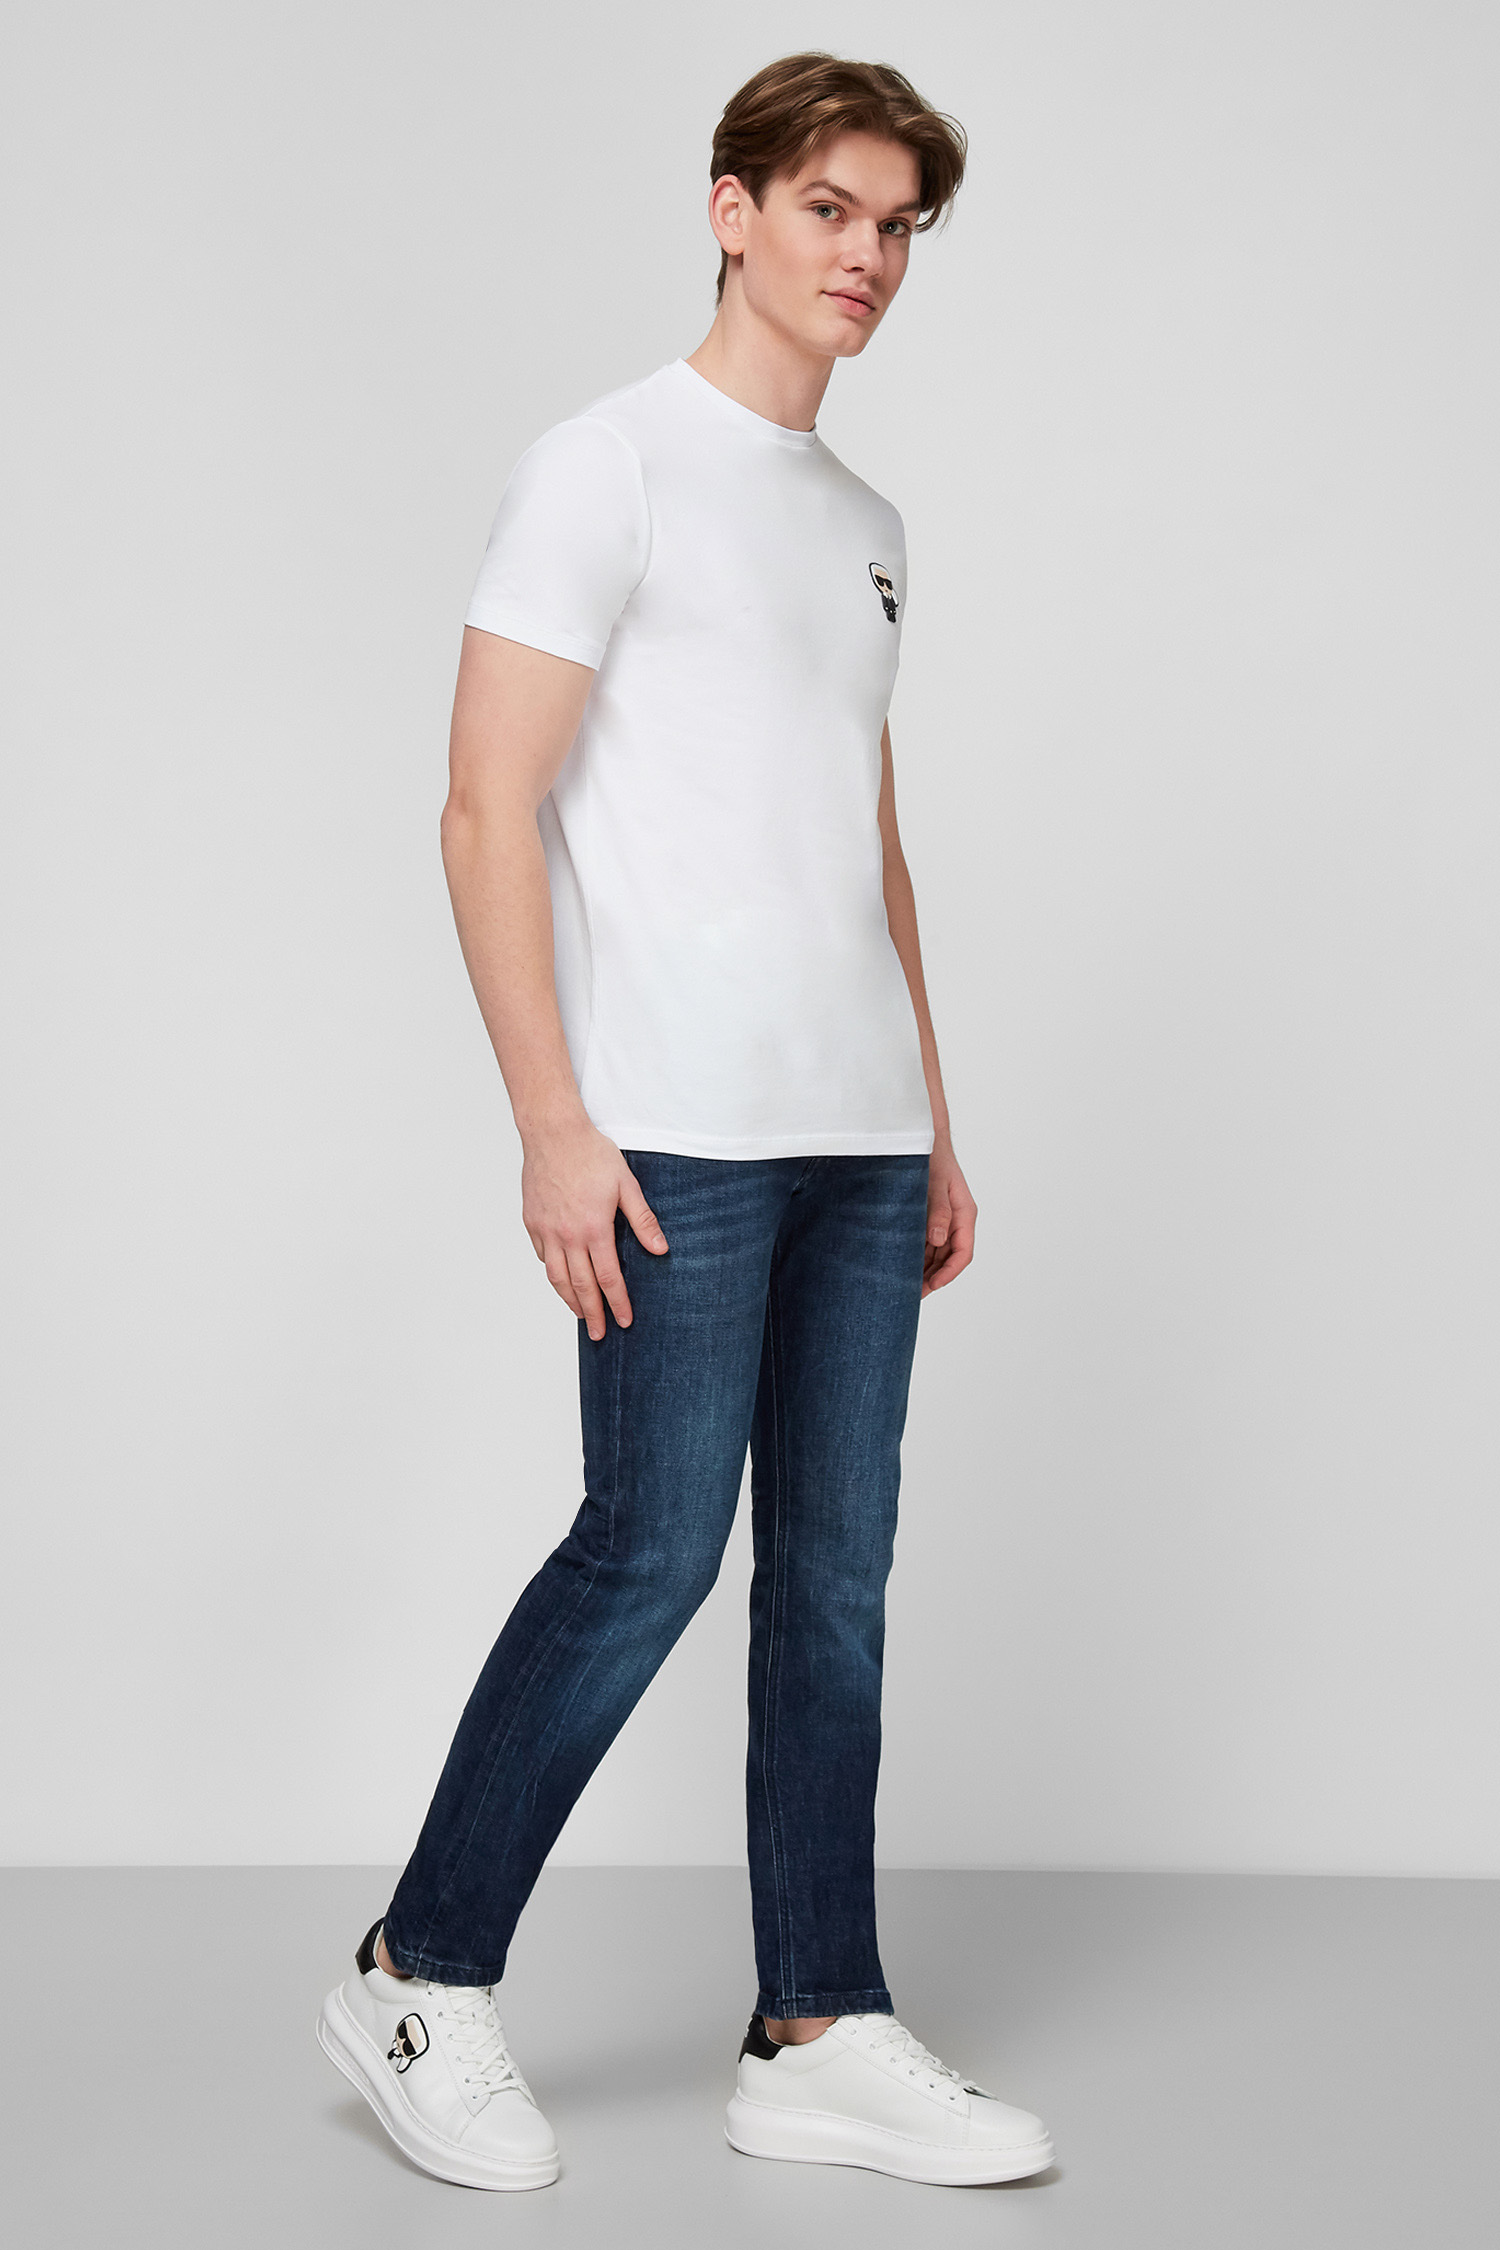 Біла футболка для хлопців Karl Lagerfeld 511221.755025;10